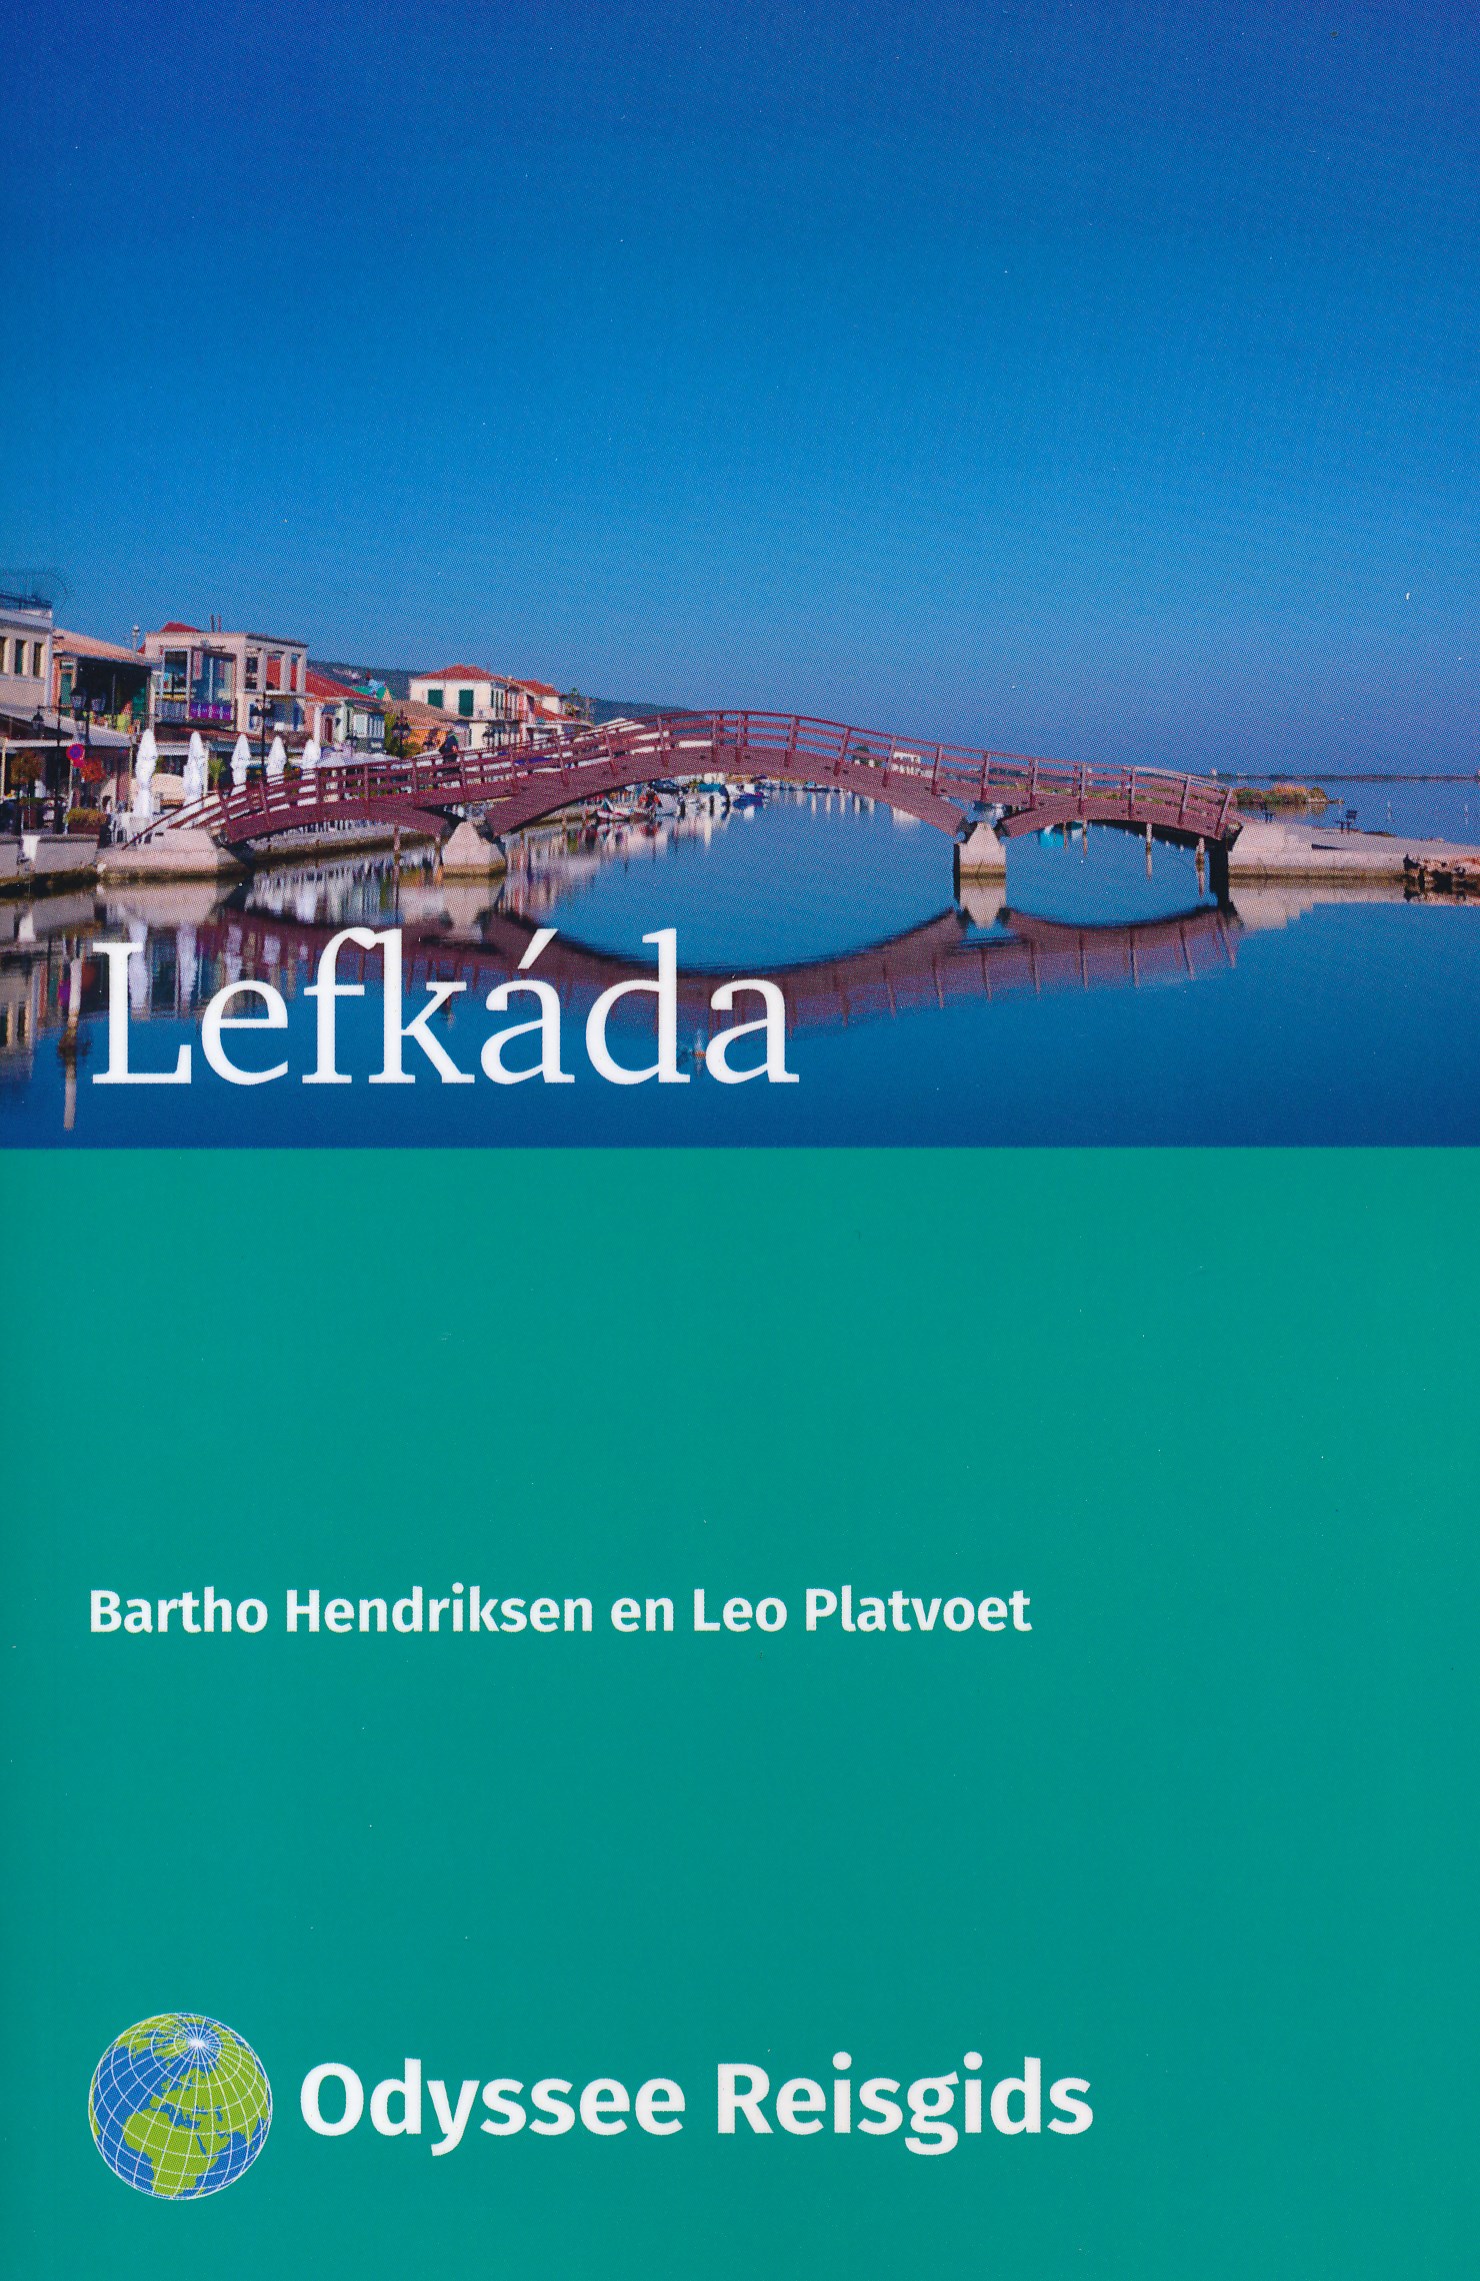 Online bestellen: Reisgids Lefkáda - Lefkas | Odyssee Reisgidsen